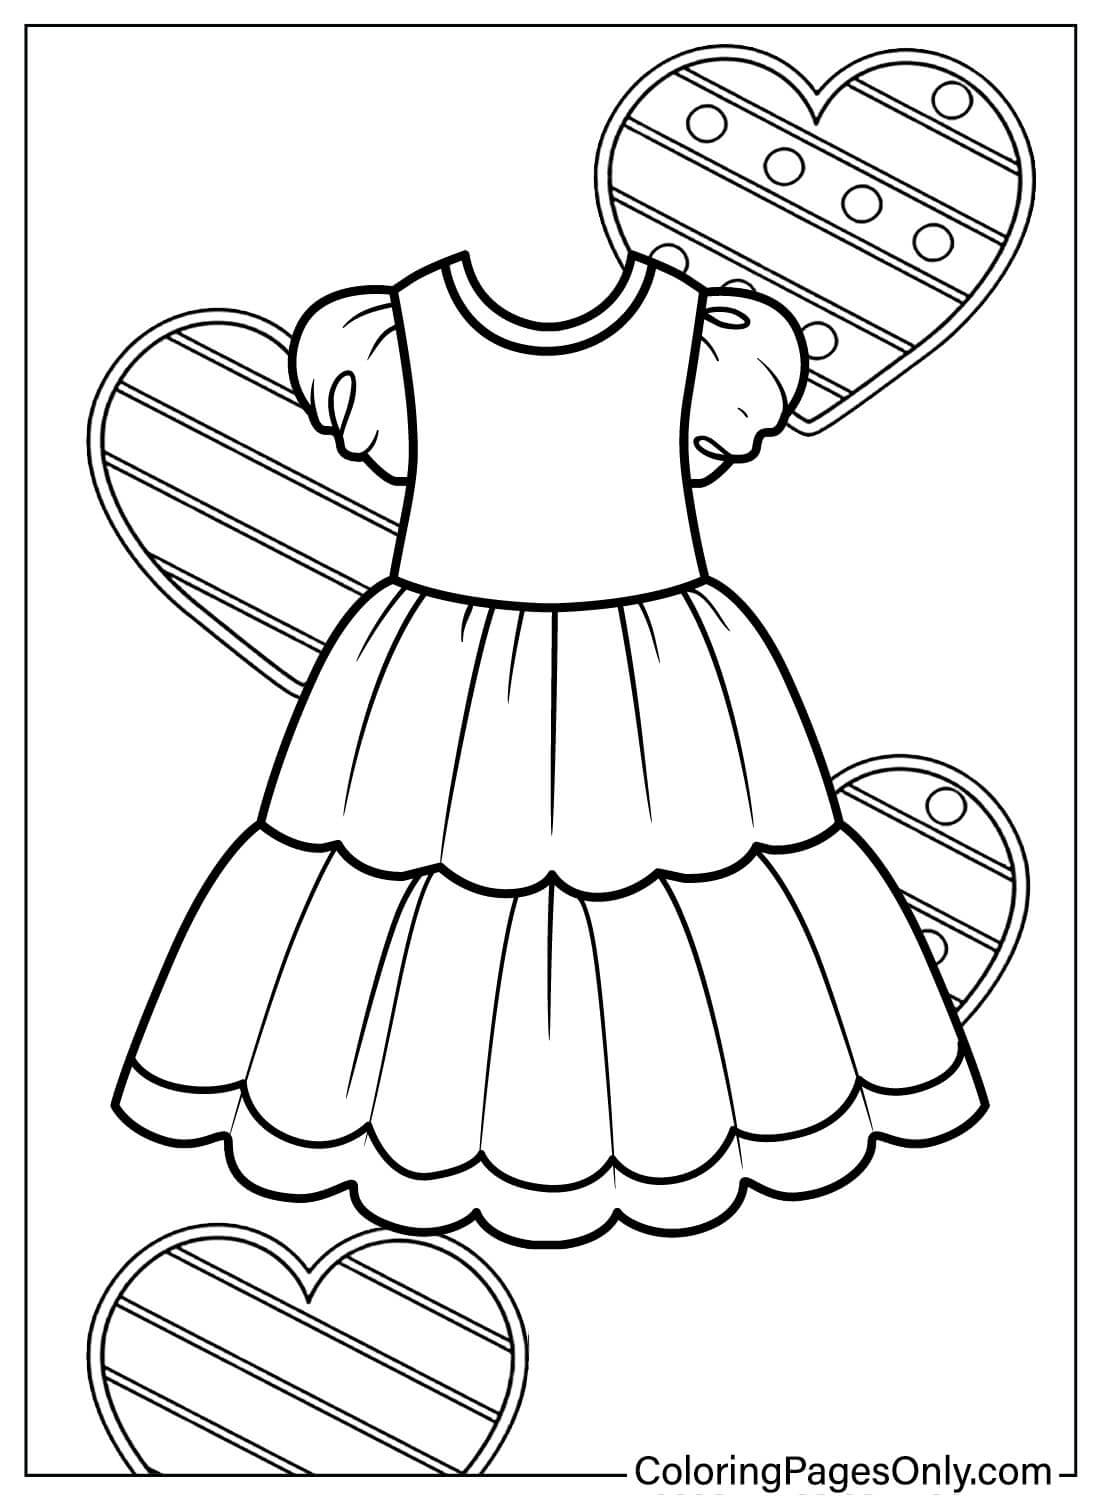 Vestido de bebé para colorear Página JPG de Vestido de bebé